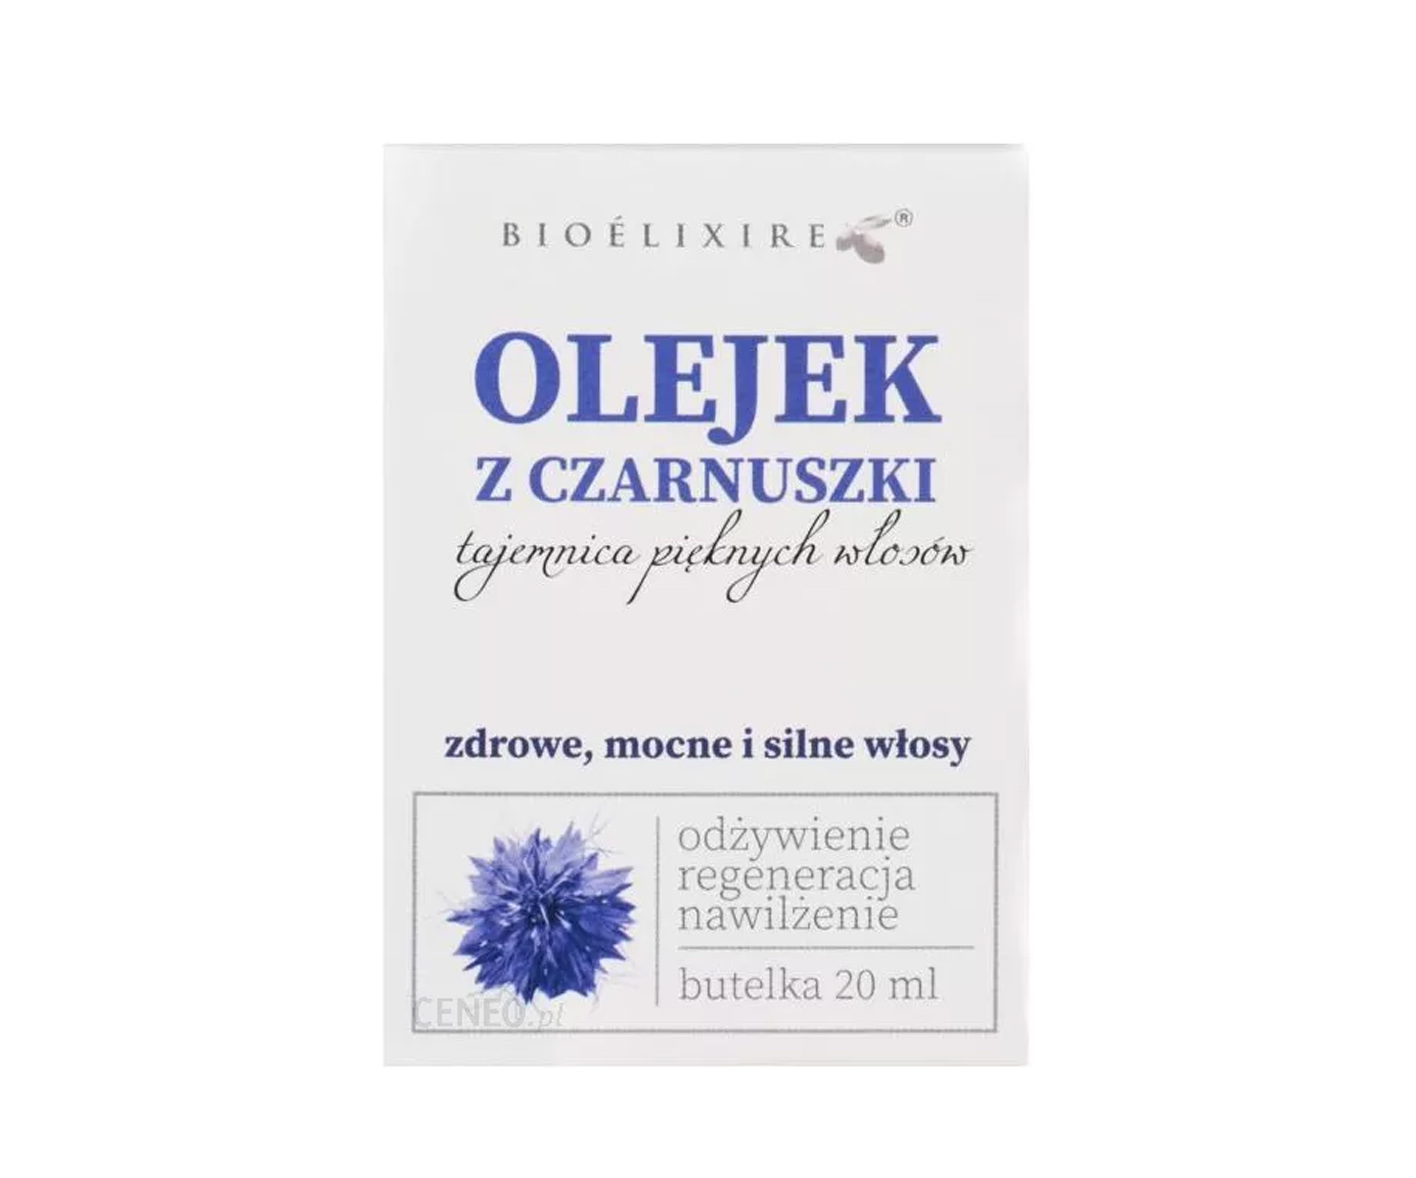  Bioelixire, Olejek z czarnuszki